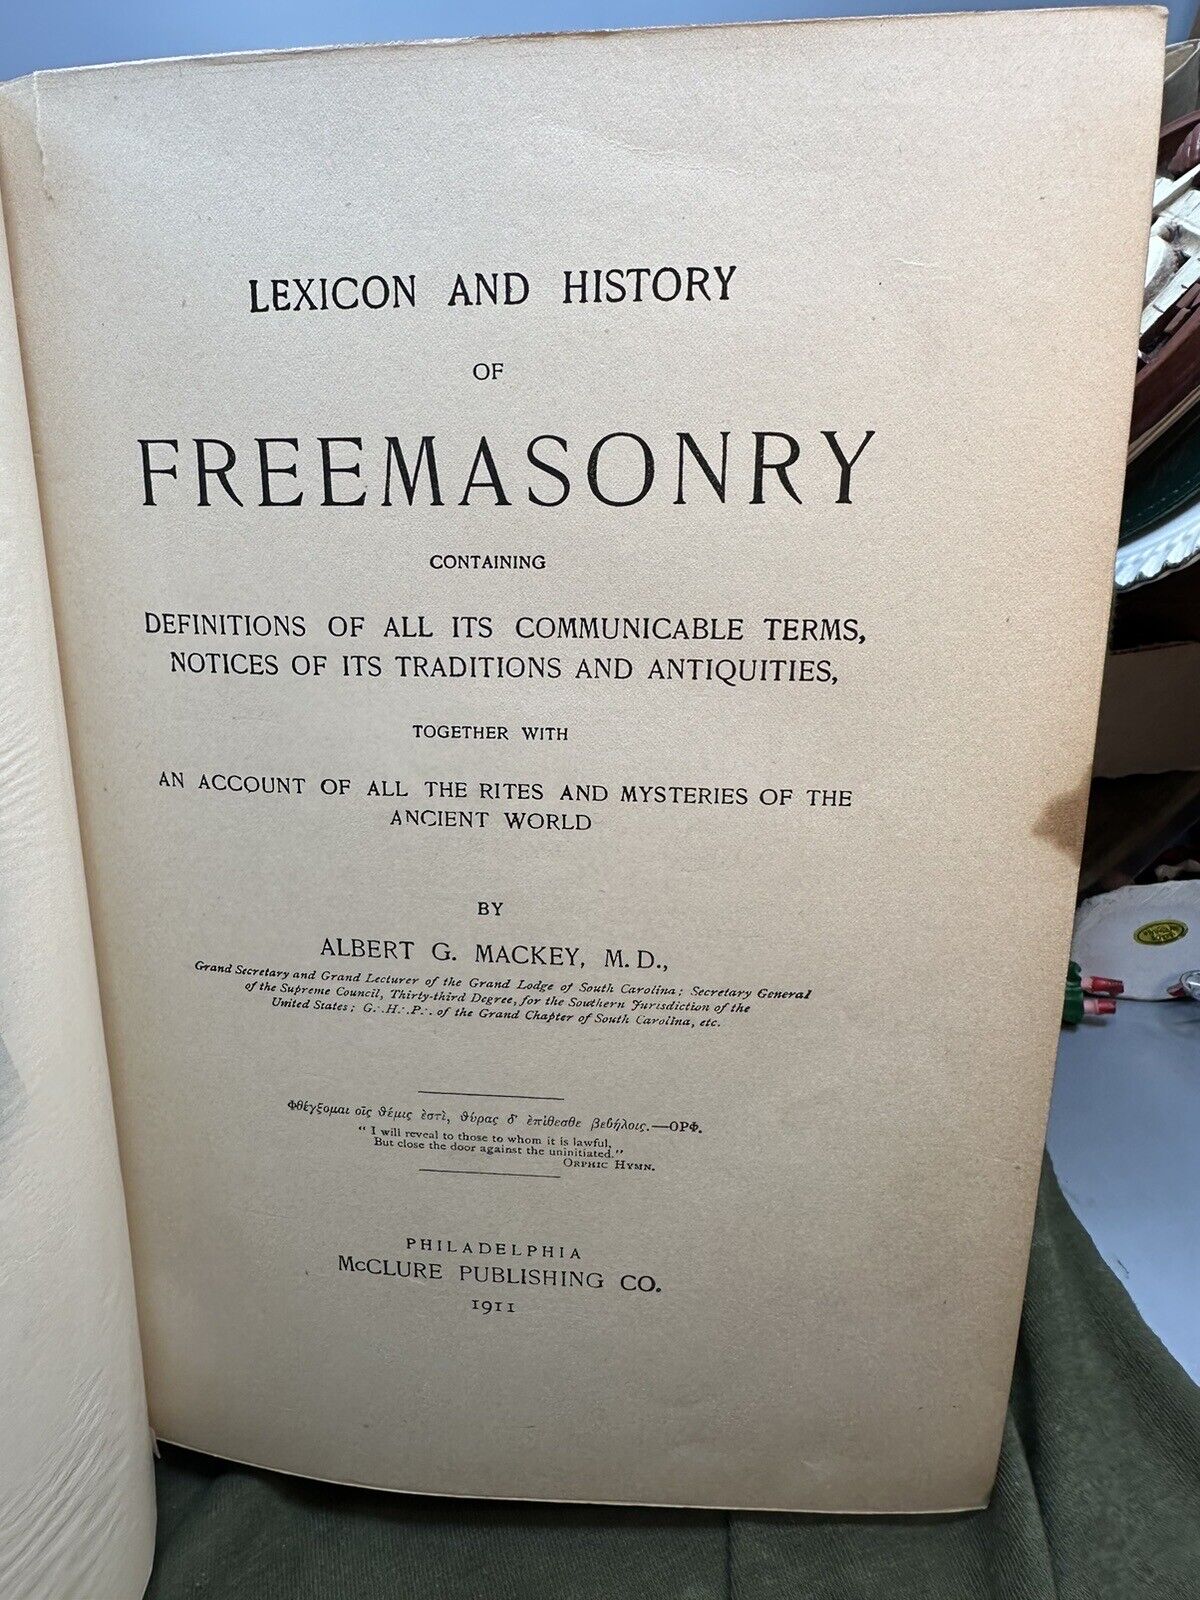 Lexicon and History of Freemasonry.  Albert G. Mackey.  Philadelphia (1911). VG+